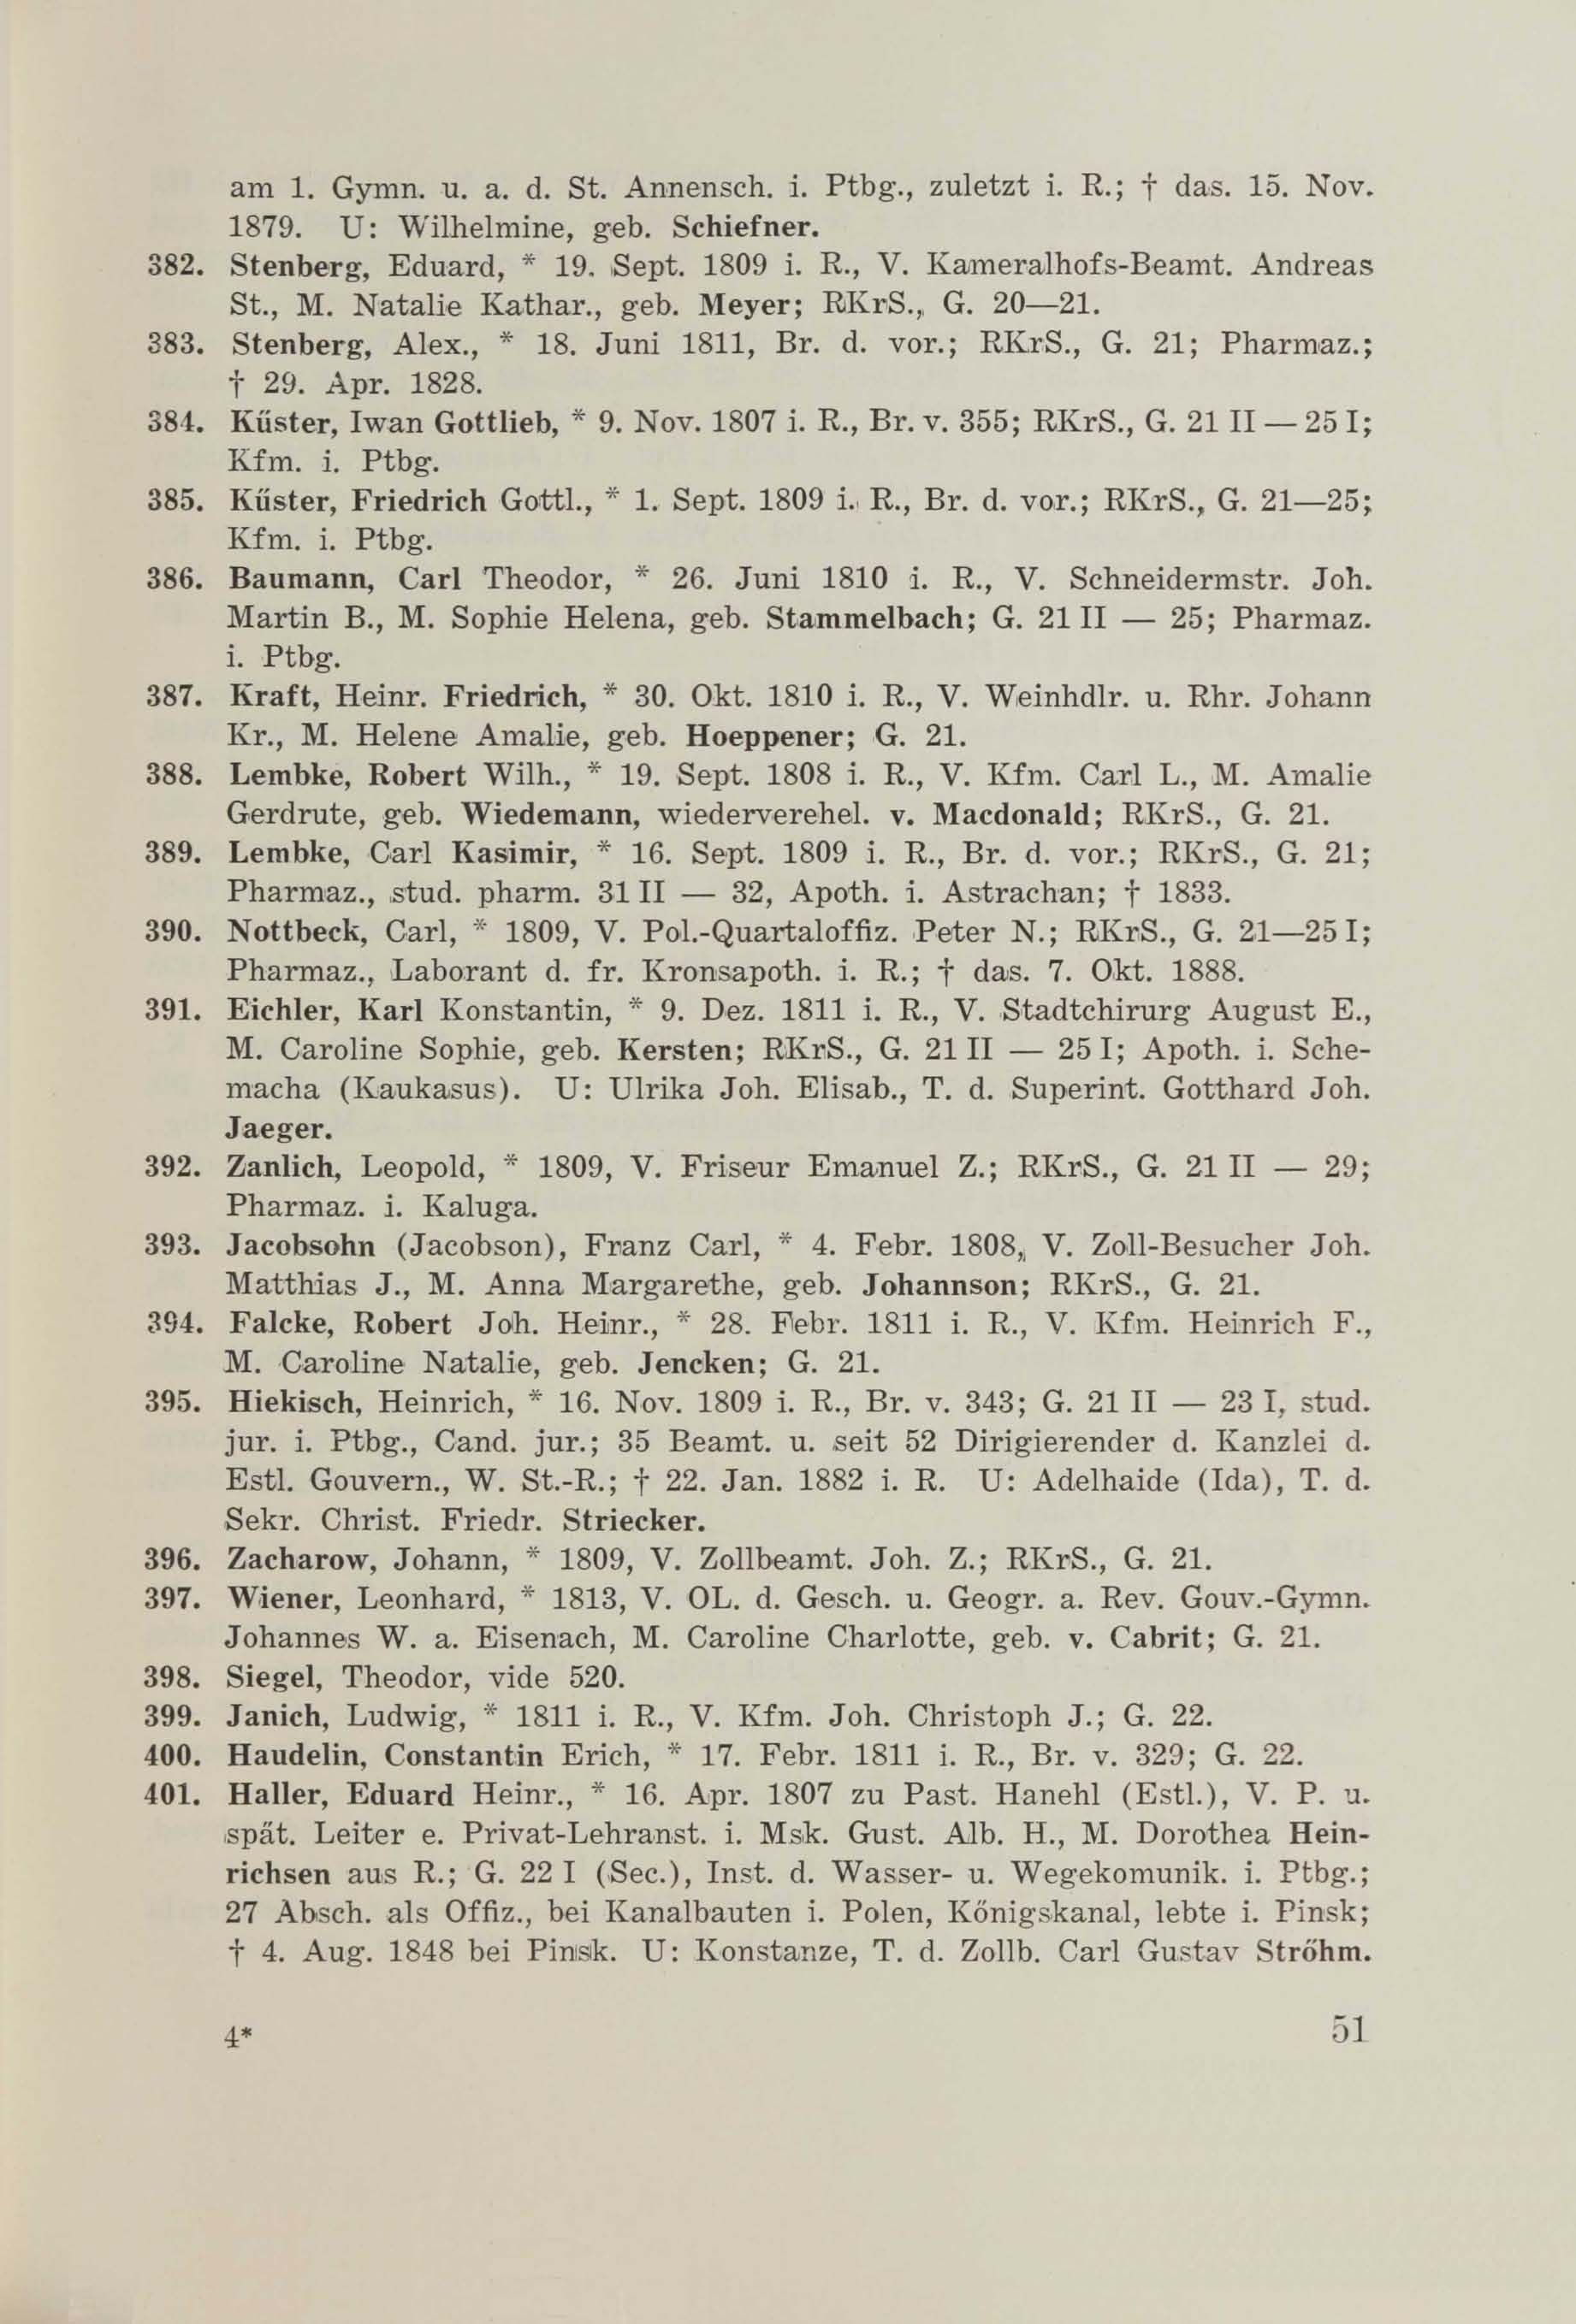 Schüler-Verzeichnis des Revalschen Gouvernements-Gymnasiums 1805–1890 (1931) | 61. (51) Main body of text